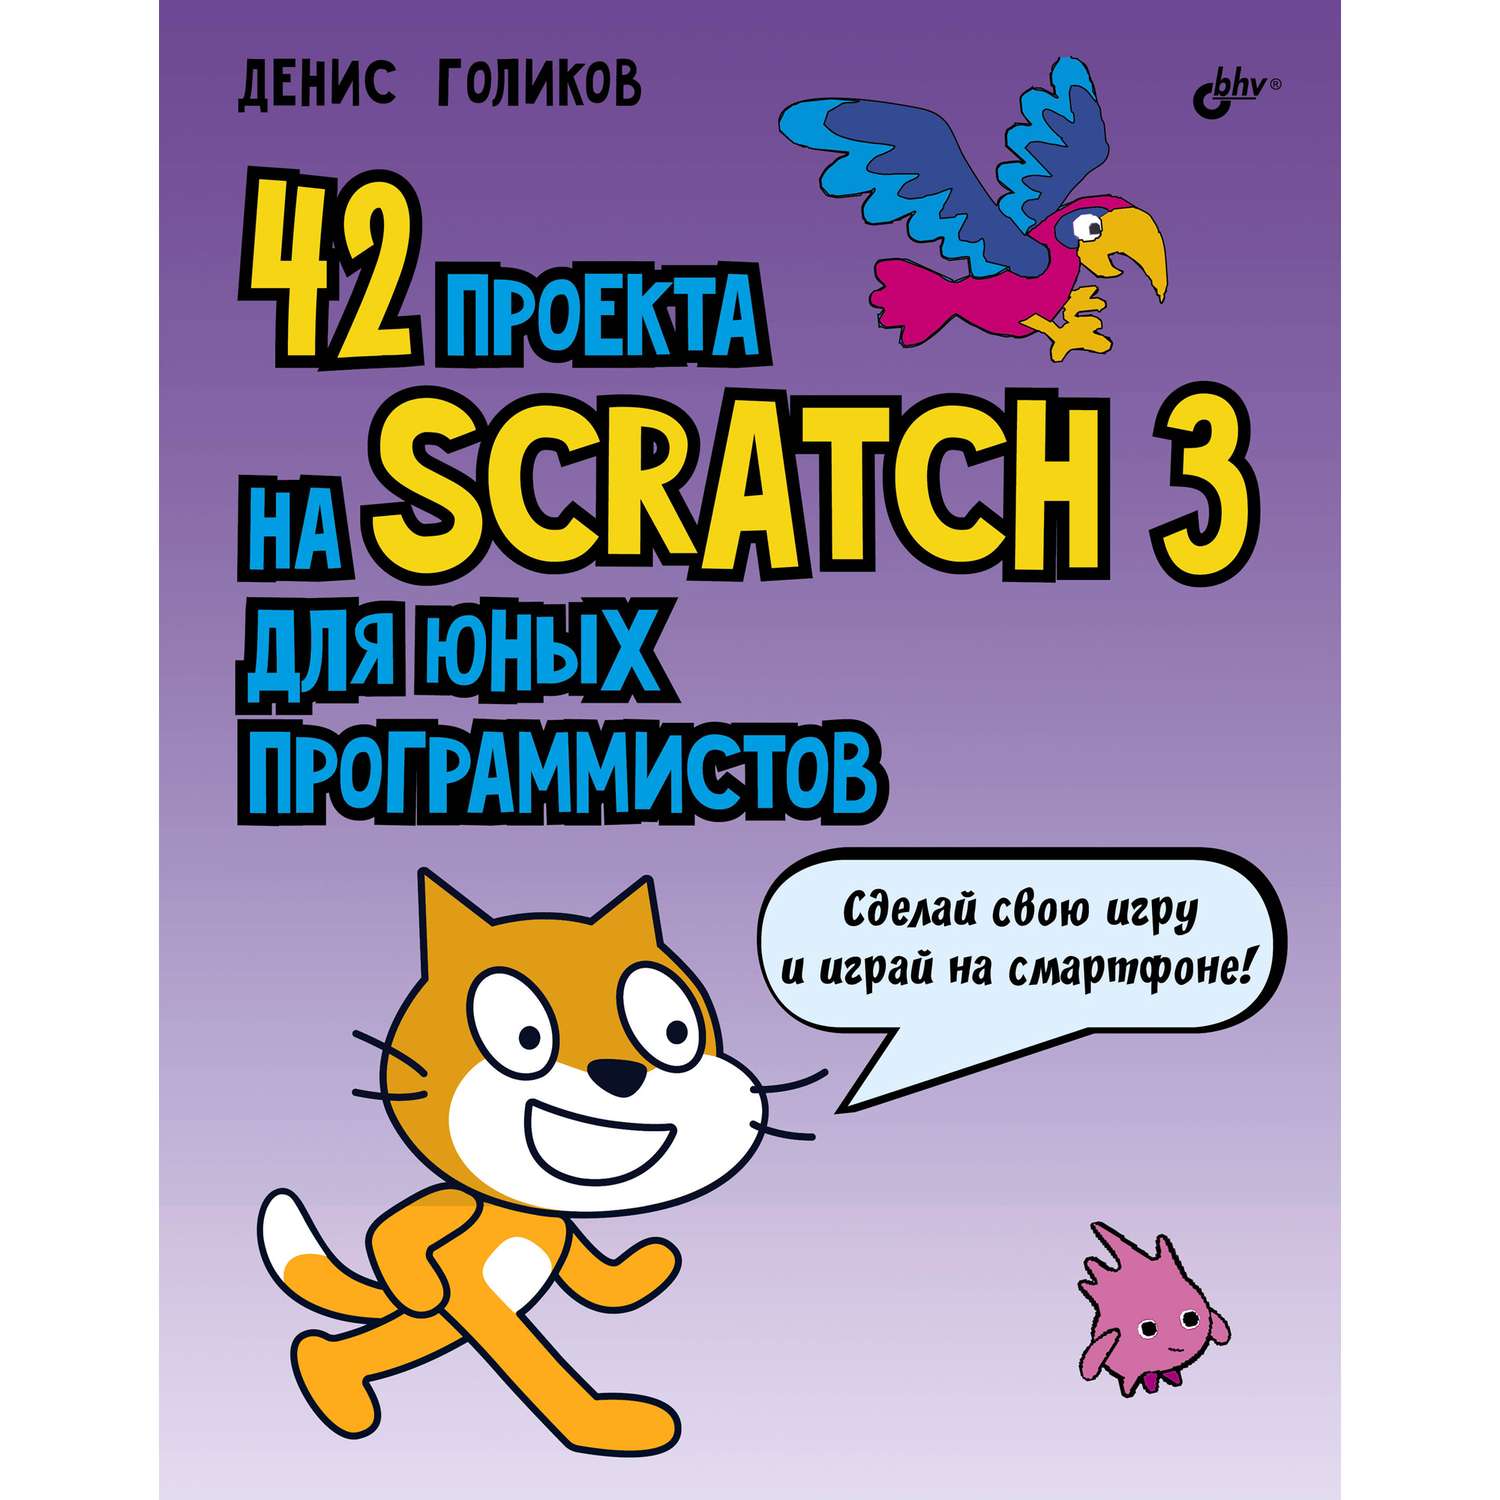 Книга BHV 42 проекта на Scratch 3 для юных программистов - фото 1